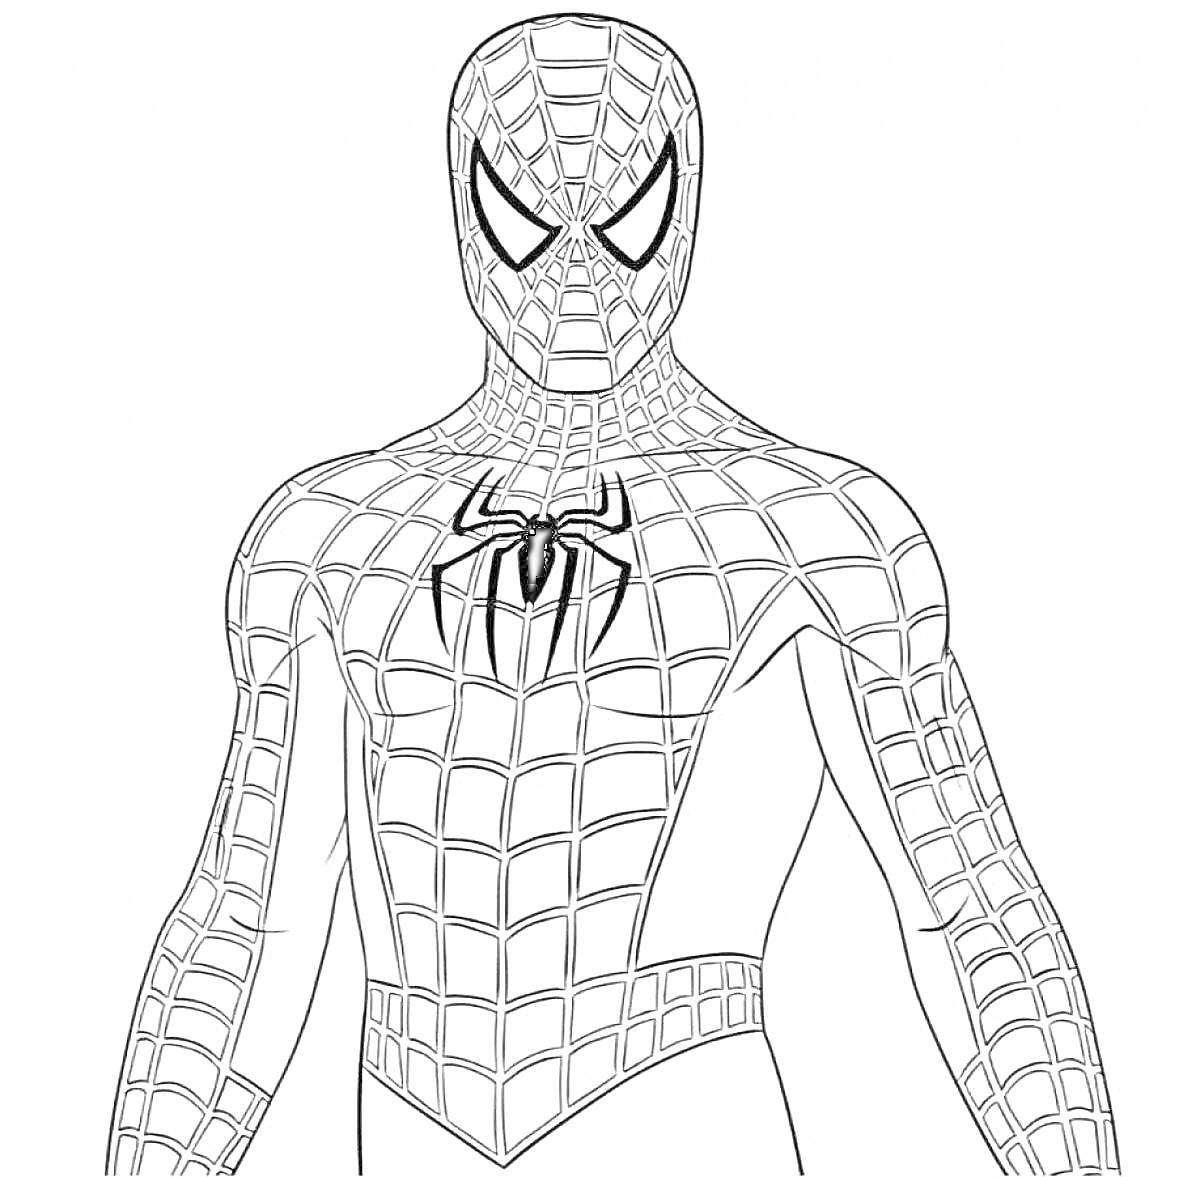 Раскраска Человек-паук в костюме с паутиной и пауком на груди